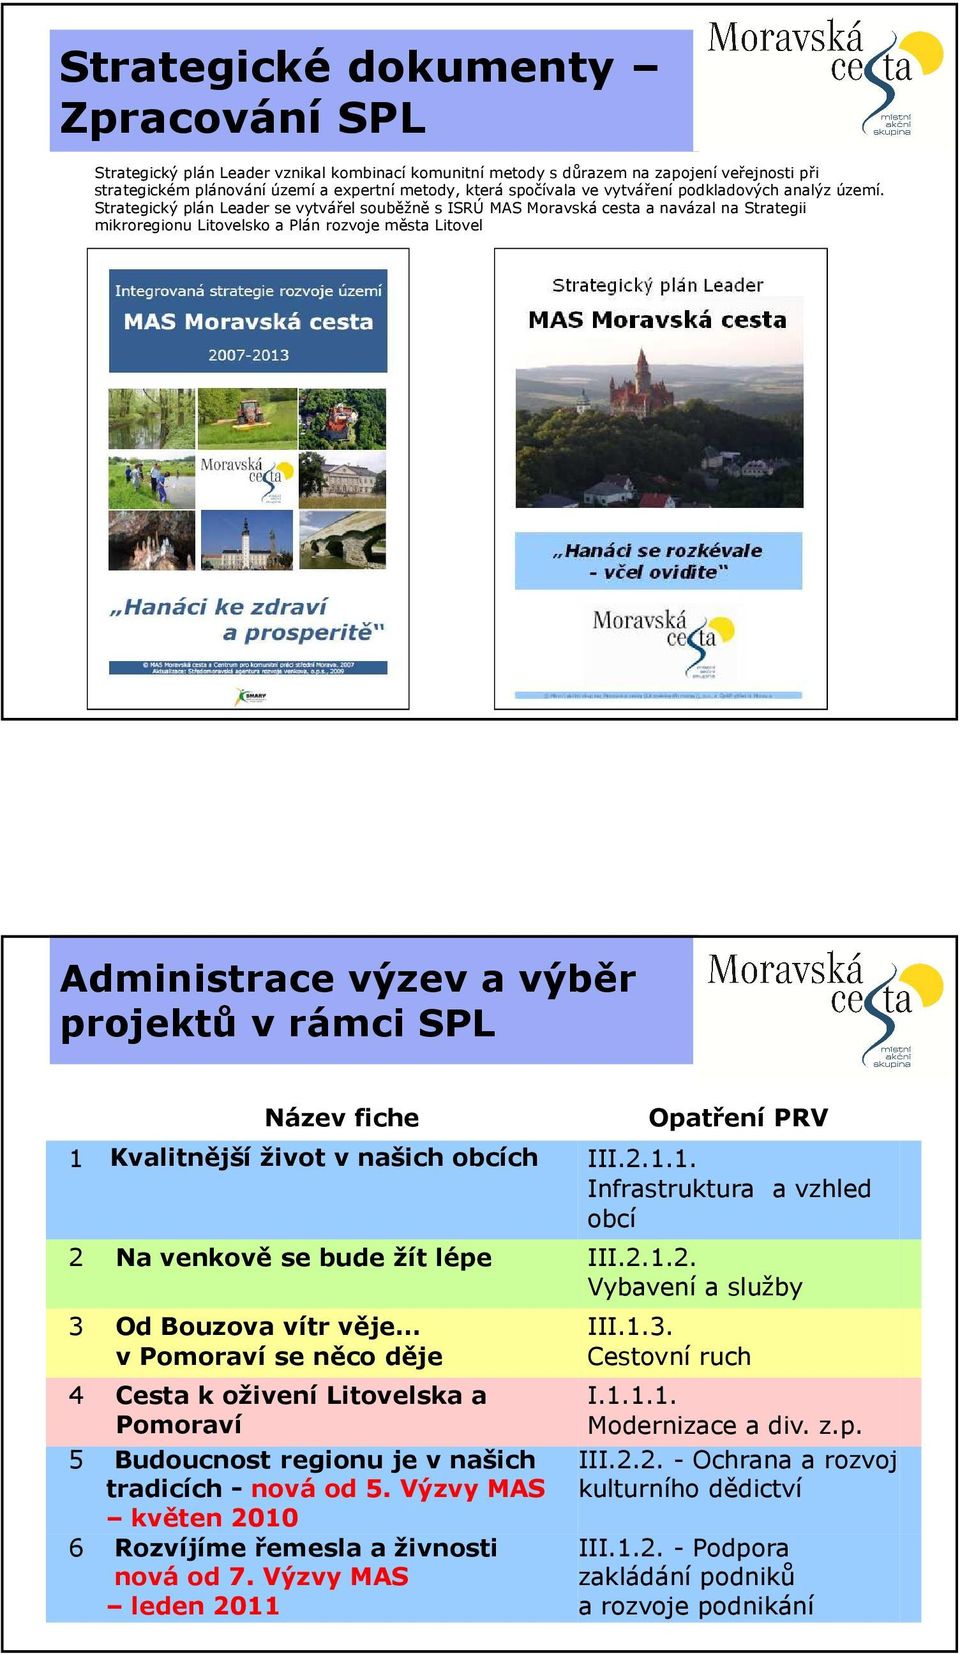 Strategický plán Leader se vytvářel souběžně s ISRÚ MAS Moravská cesta a navázal na Strategii mikroregionu Litovelsko a Plán rozvoje města Litovel Administrace výzev a výběr projektů v rámci SPL